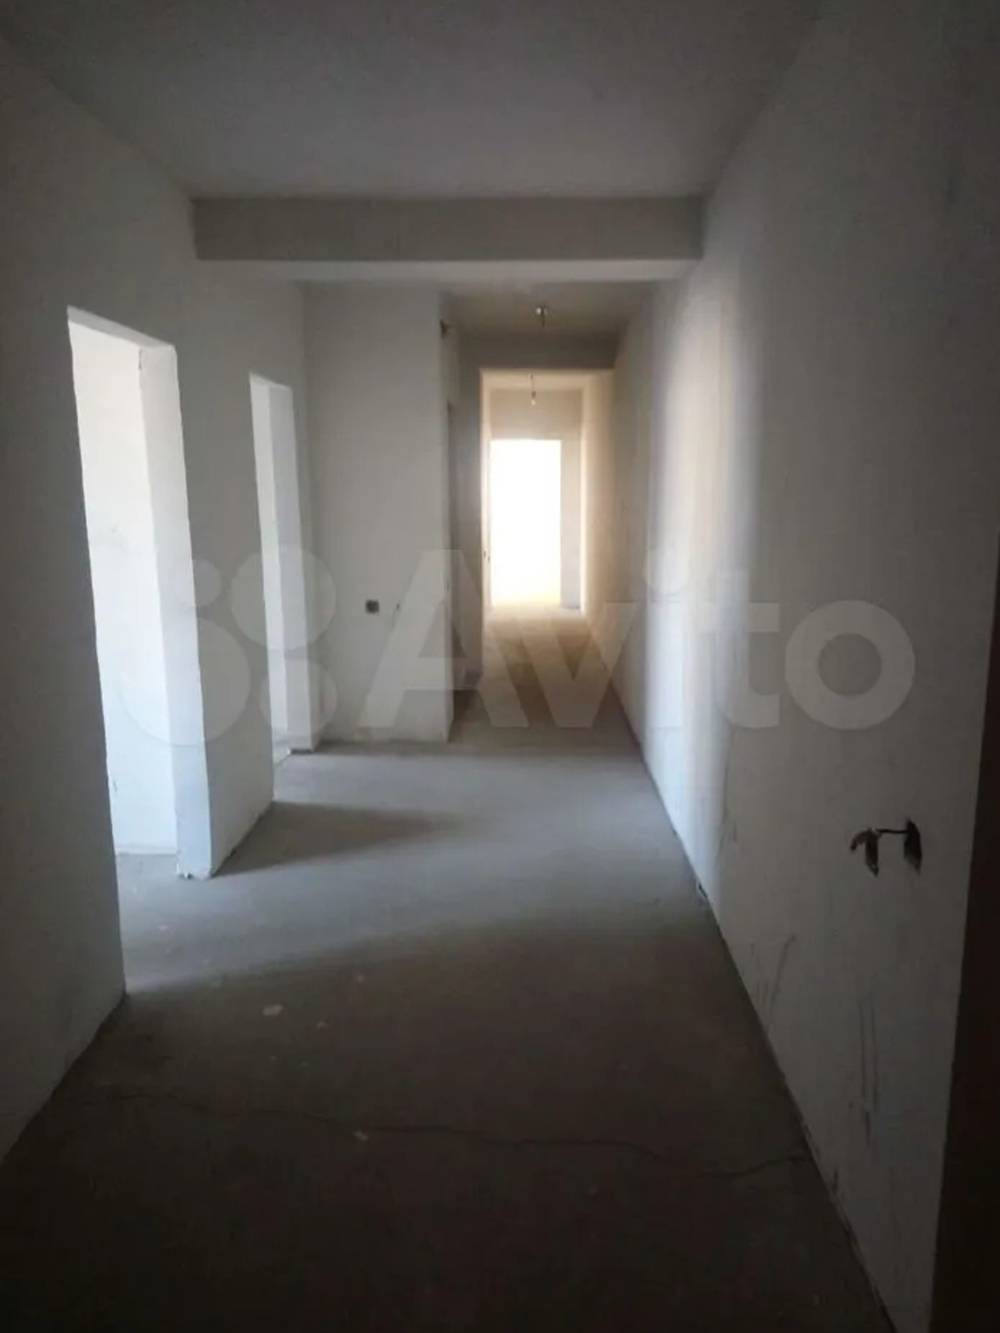 Фотографии квартиры на «Авито» были не очень зажигательные и неактуальные — на деле в коридоре уже лежала плитка